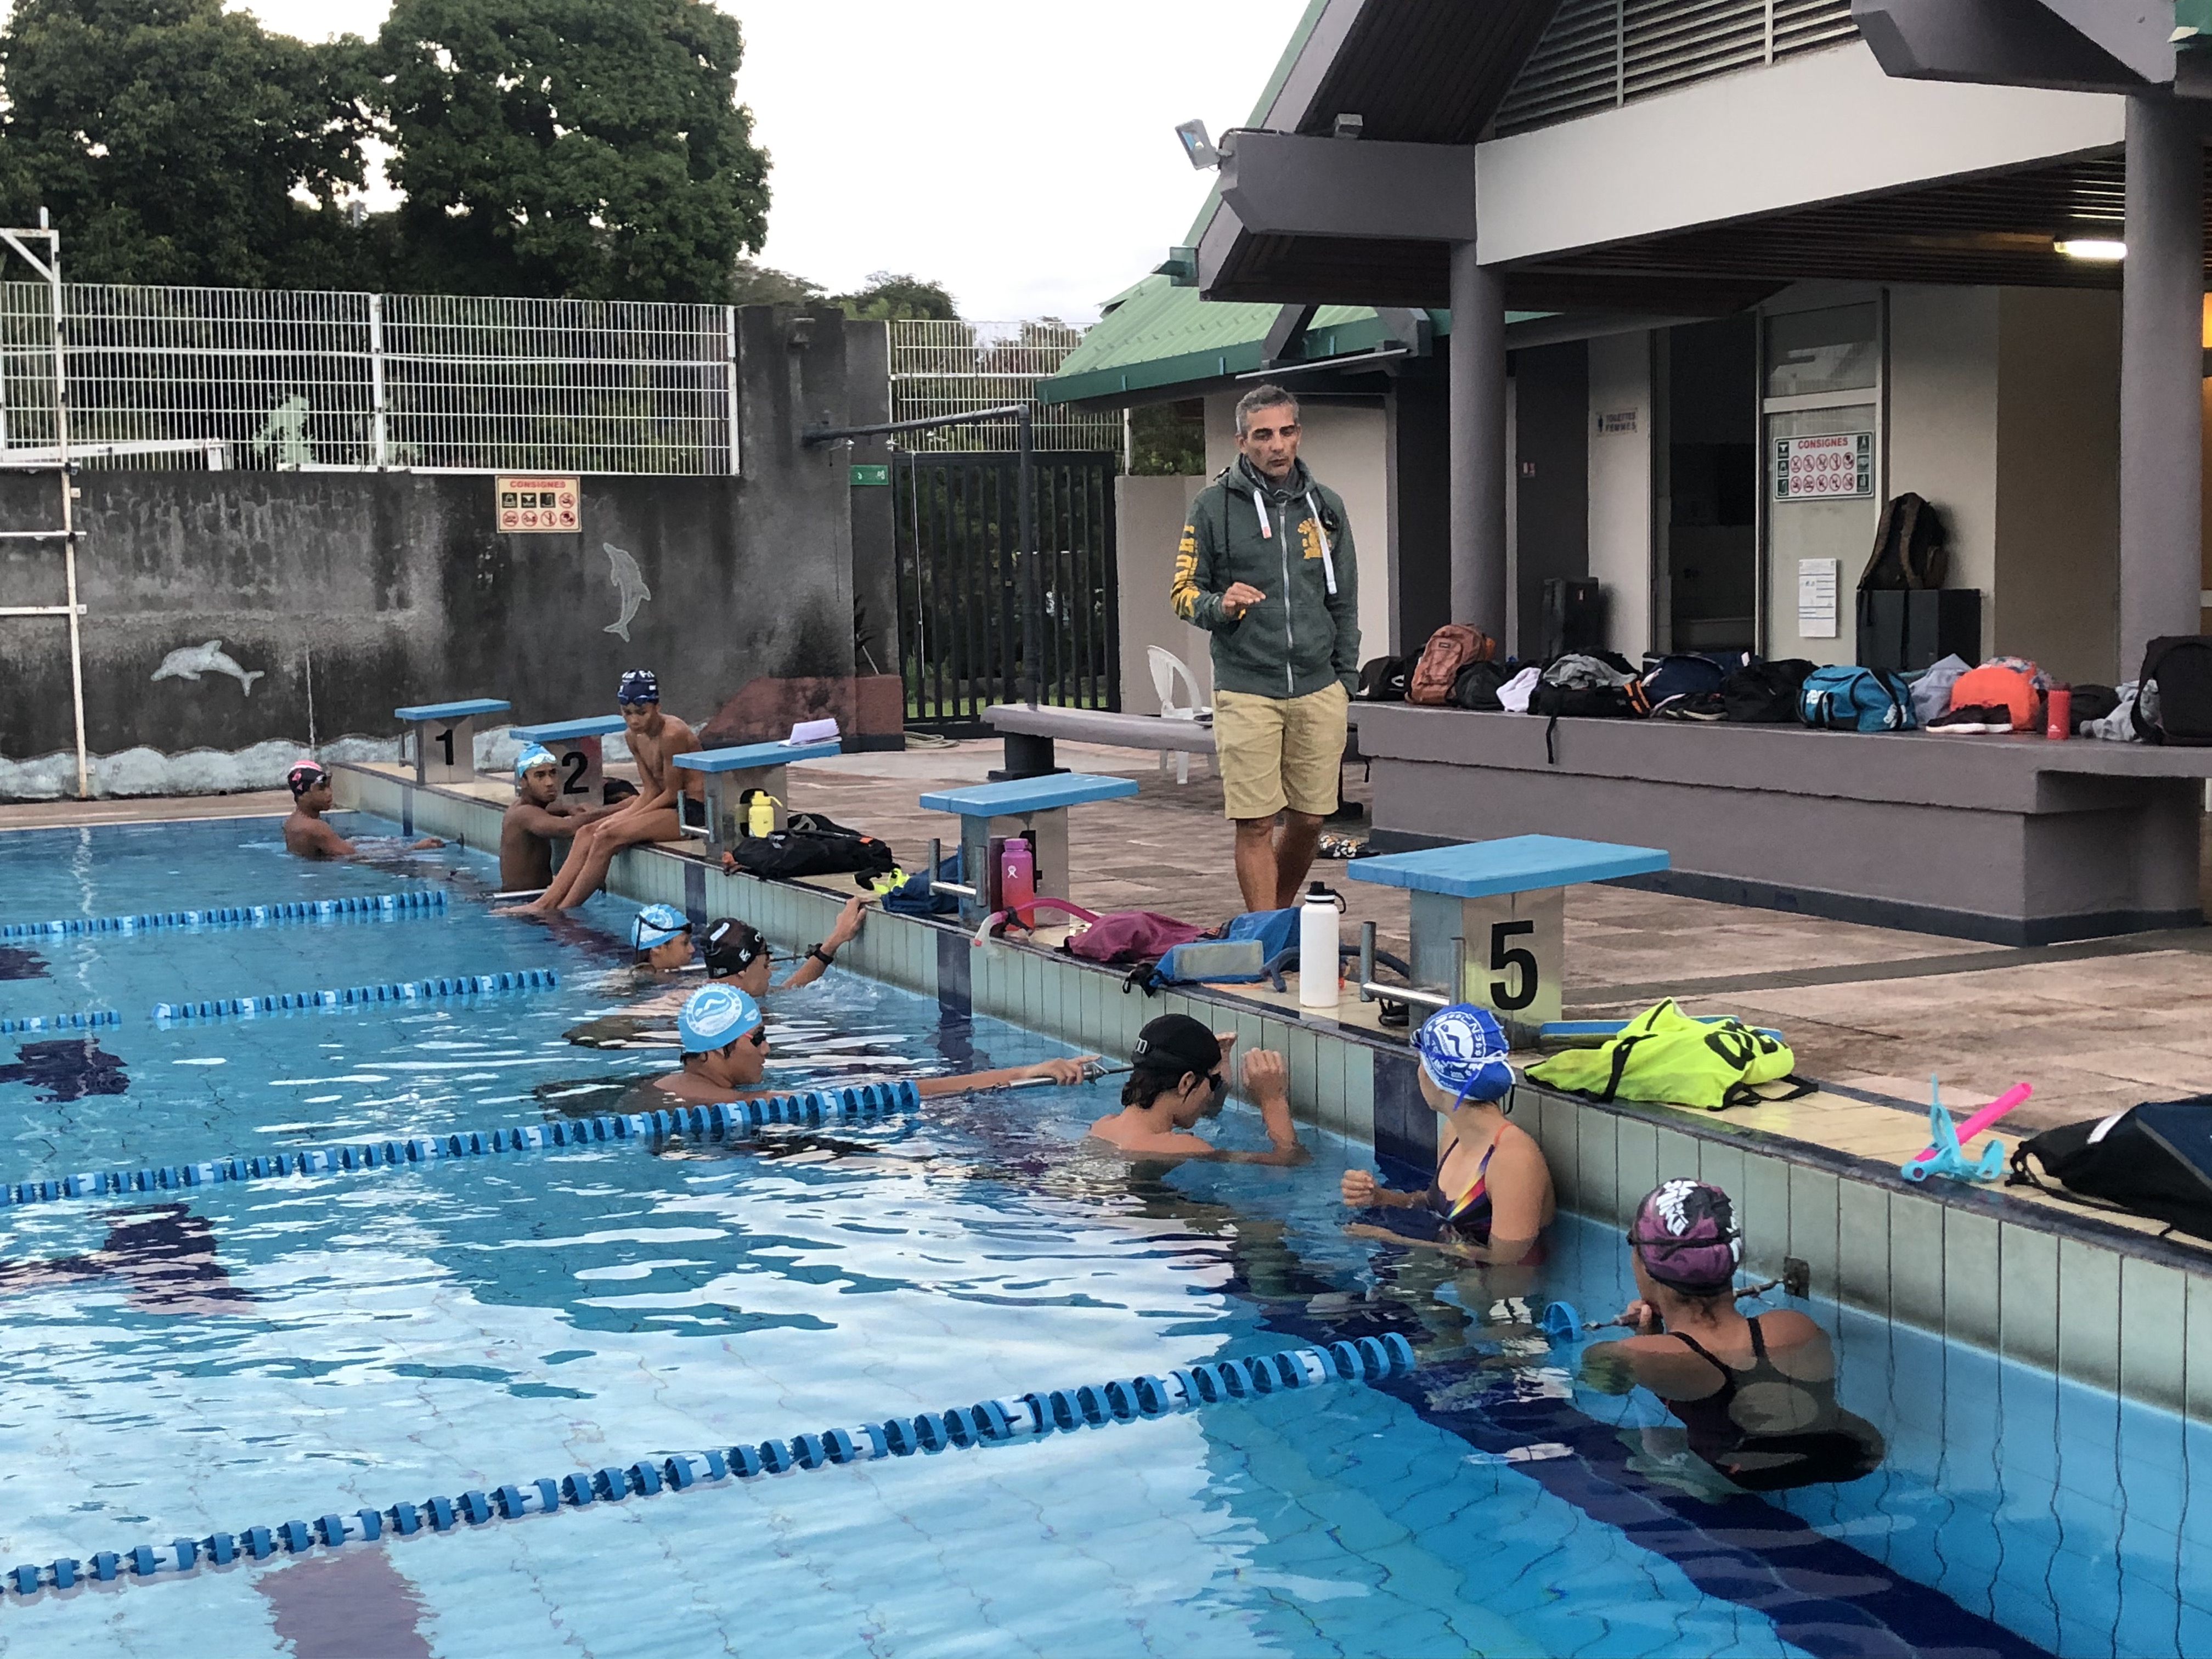 Le centre d'accession et de formation (CAF), ou centre d'entrainement fédéral, rassemble depuis un an et demi les meilleurs espoirs de la natation. Ils bénéficient grâce au CAF d'horaire de cours aménagés, ce qui leur permet ainsi de s'entrainer jusqu'à 20 heures par semaine.